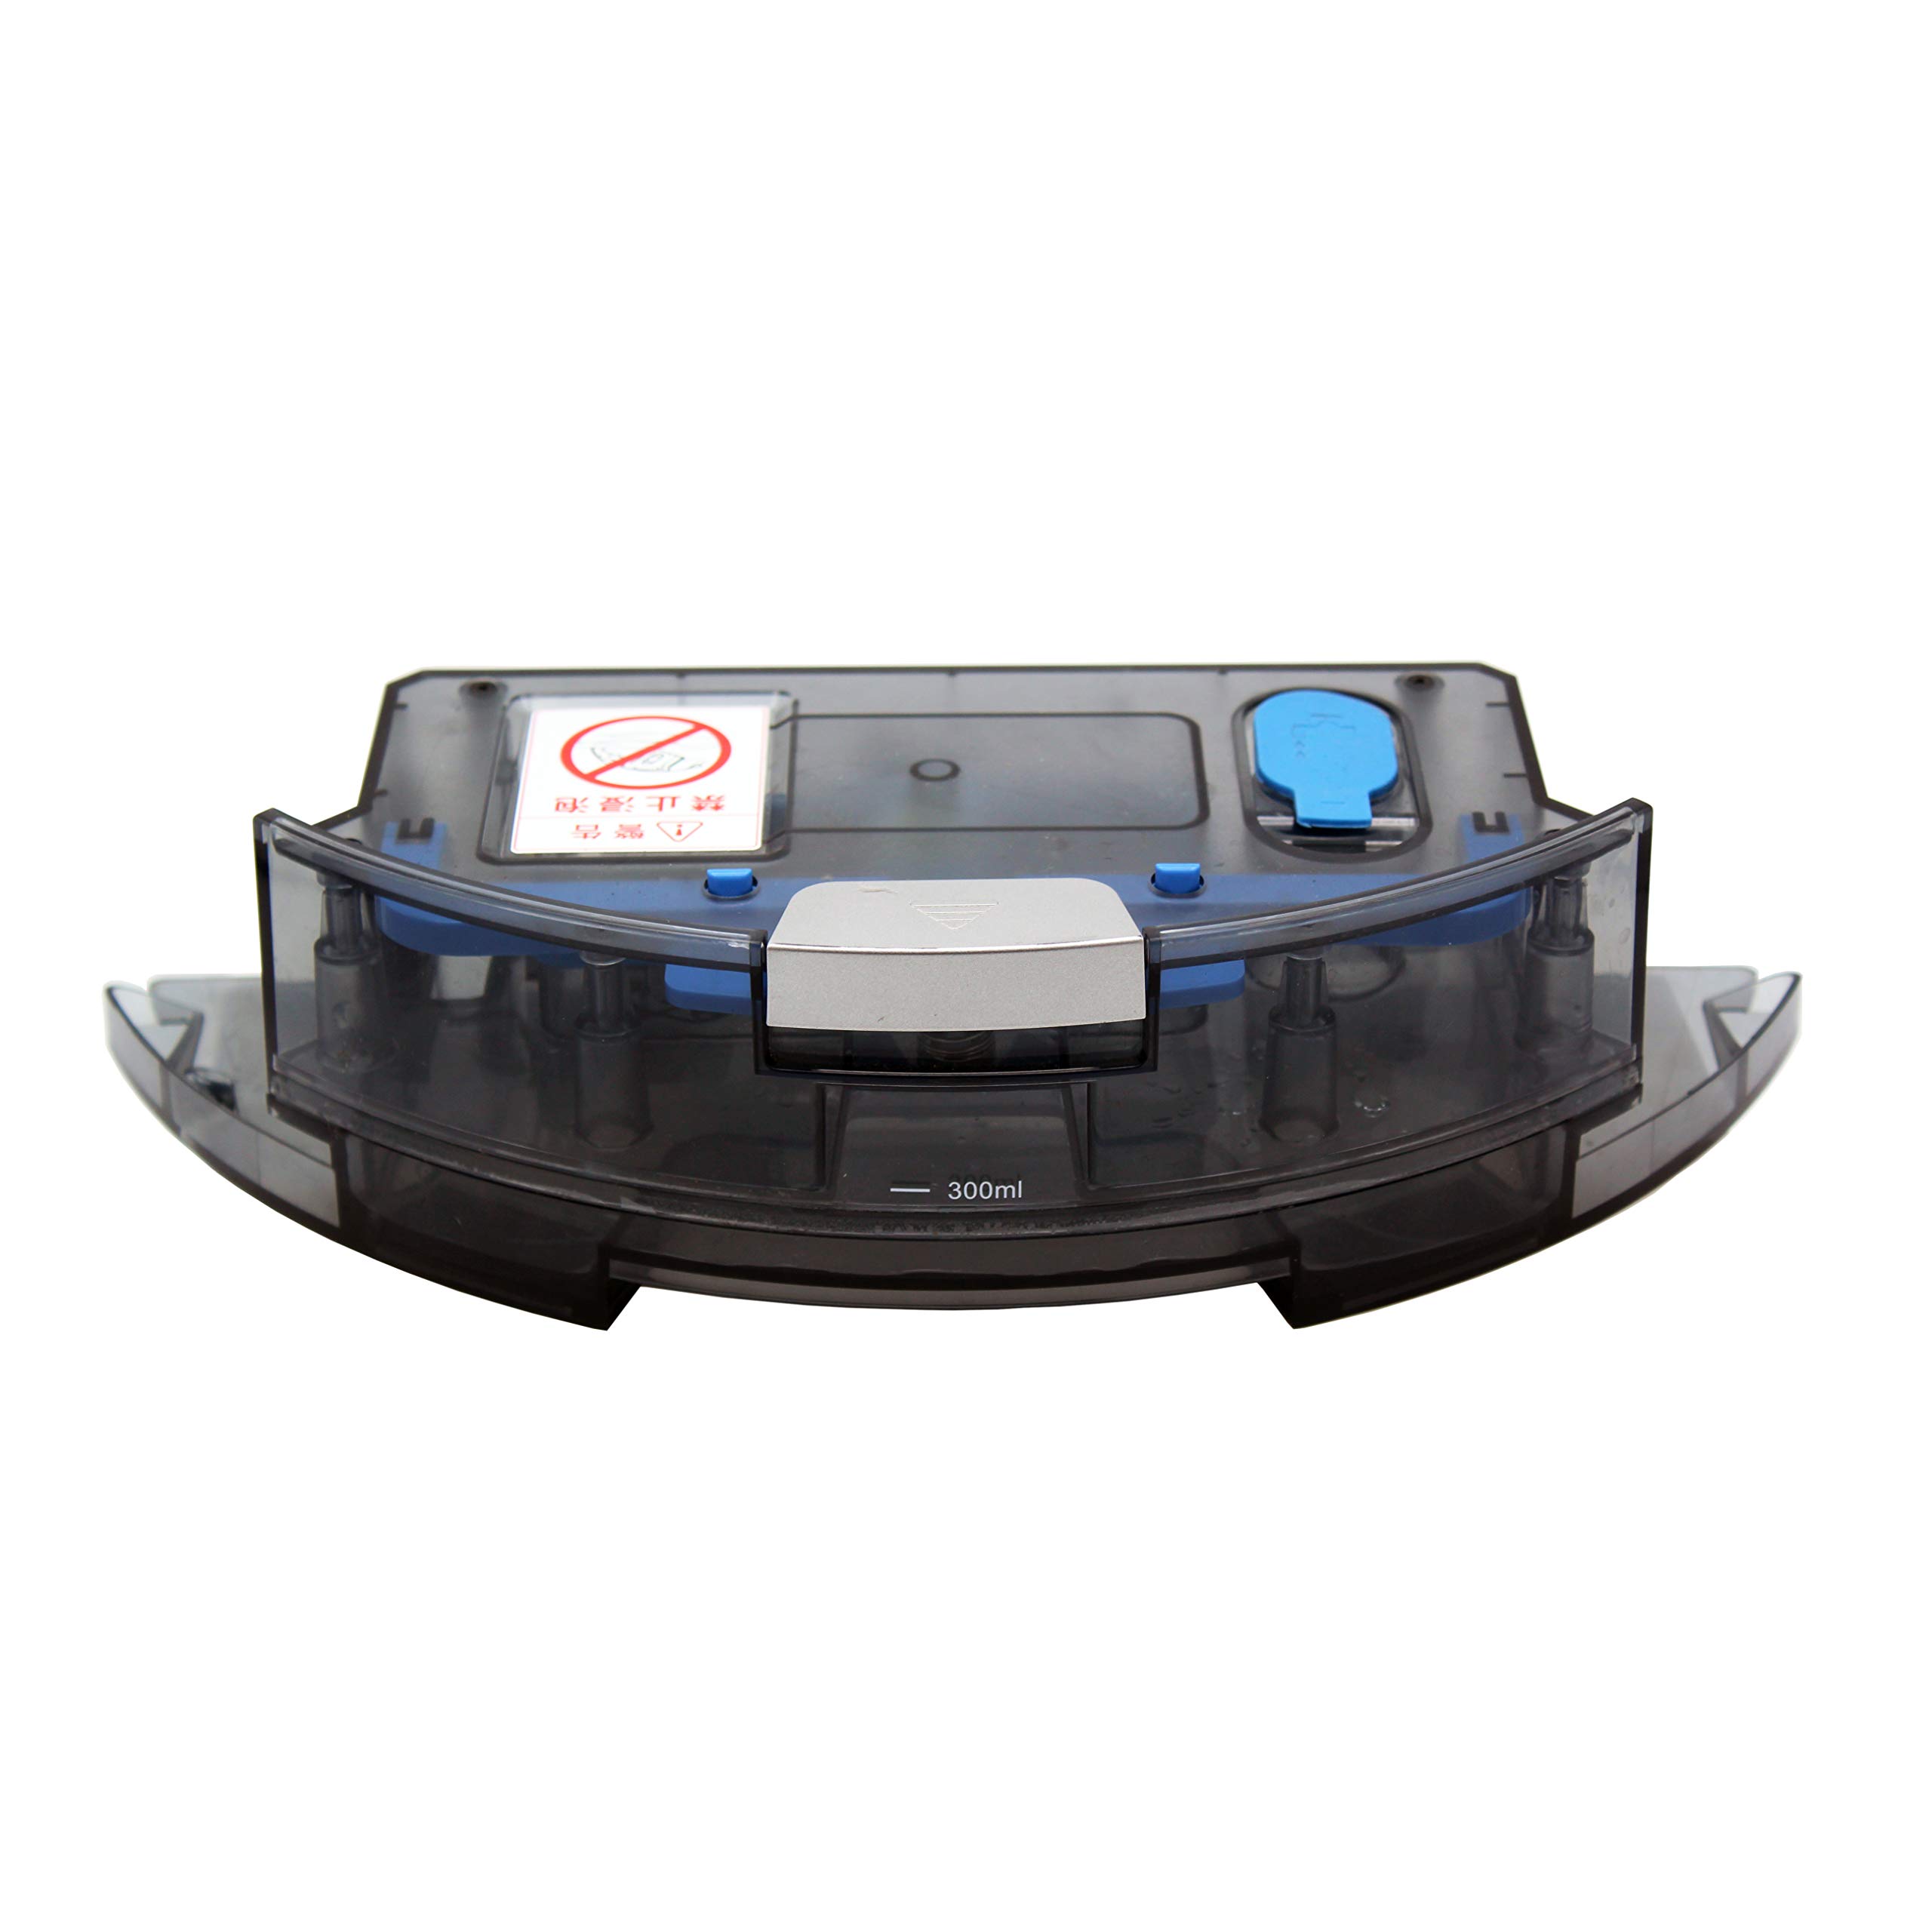 Robotic Vacuum Cleaner iLife X750 Water Tank 